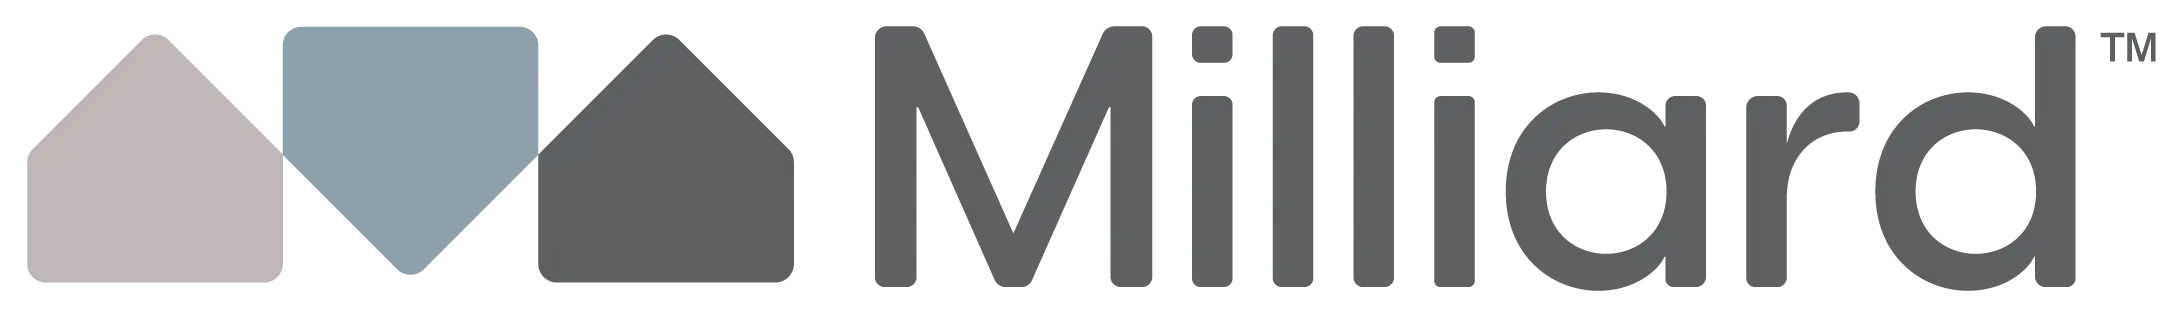 Milliard coupons logo